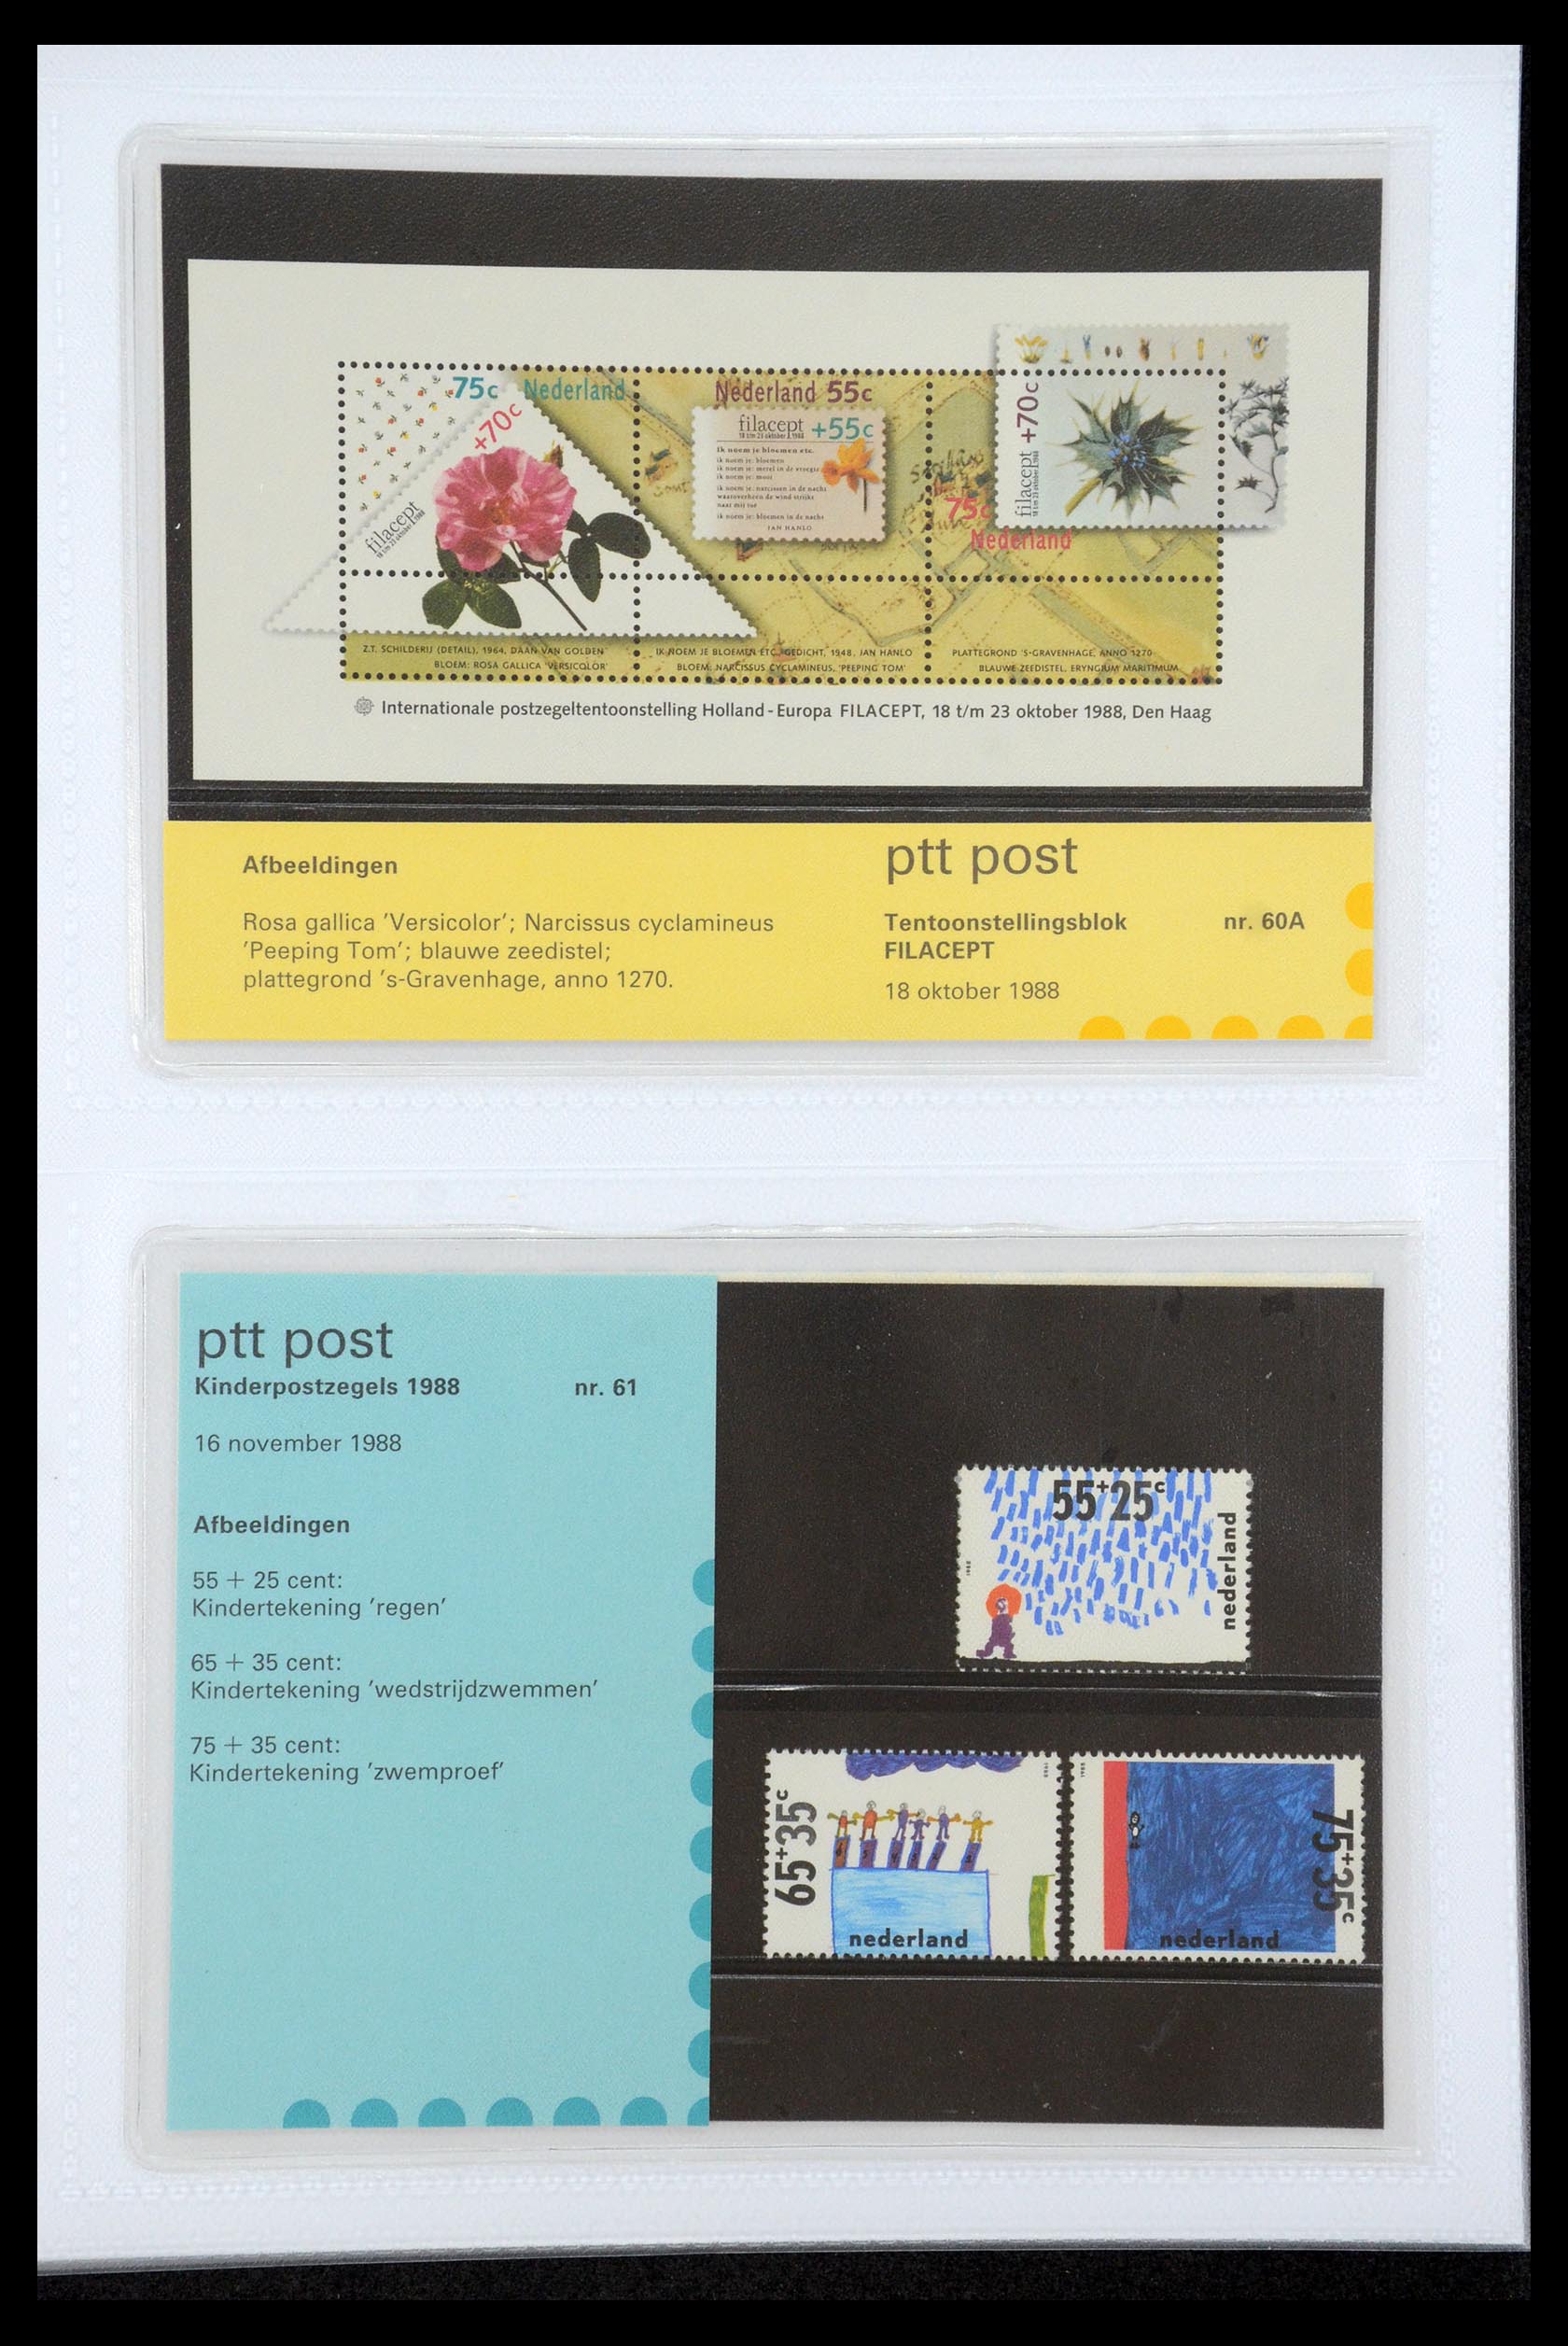 35947 031 - Stamp Collection 35947 Netherlands PTT presentation packs 1982-2019!